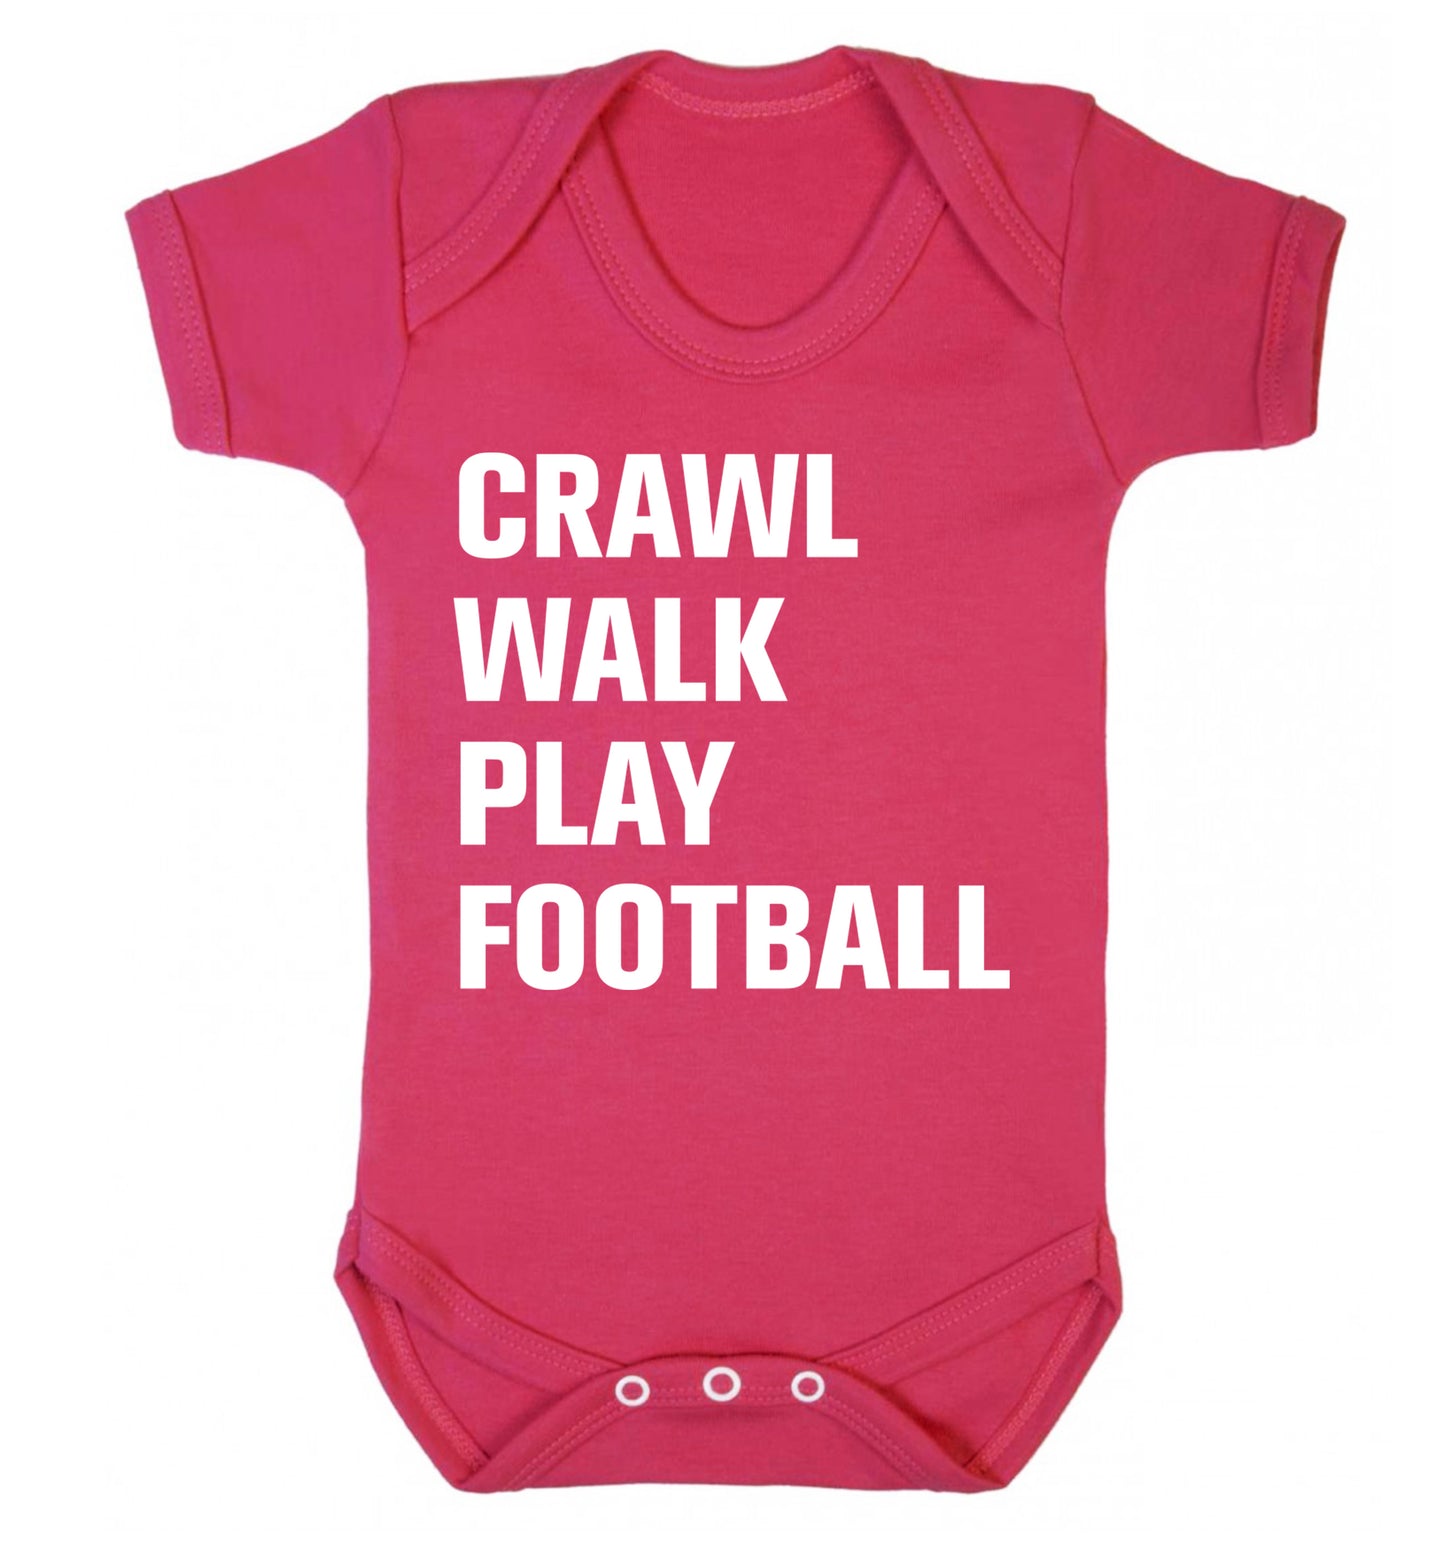 Crawl, walk, play football Baby Vest dark pink 18-24 months